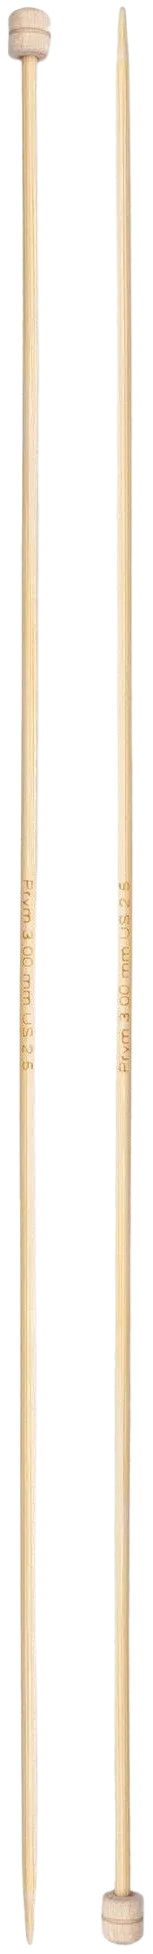 Prym neulepuikko 3,0 33cm bambu - 2